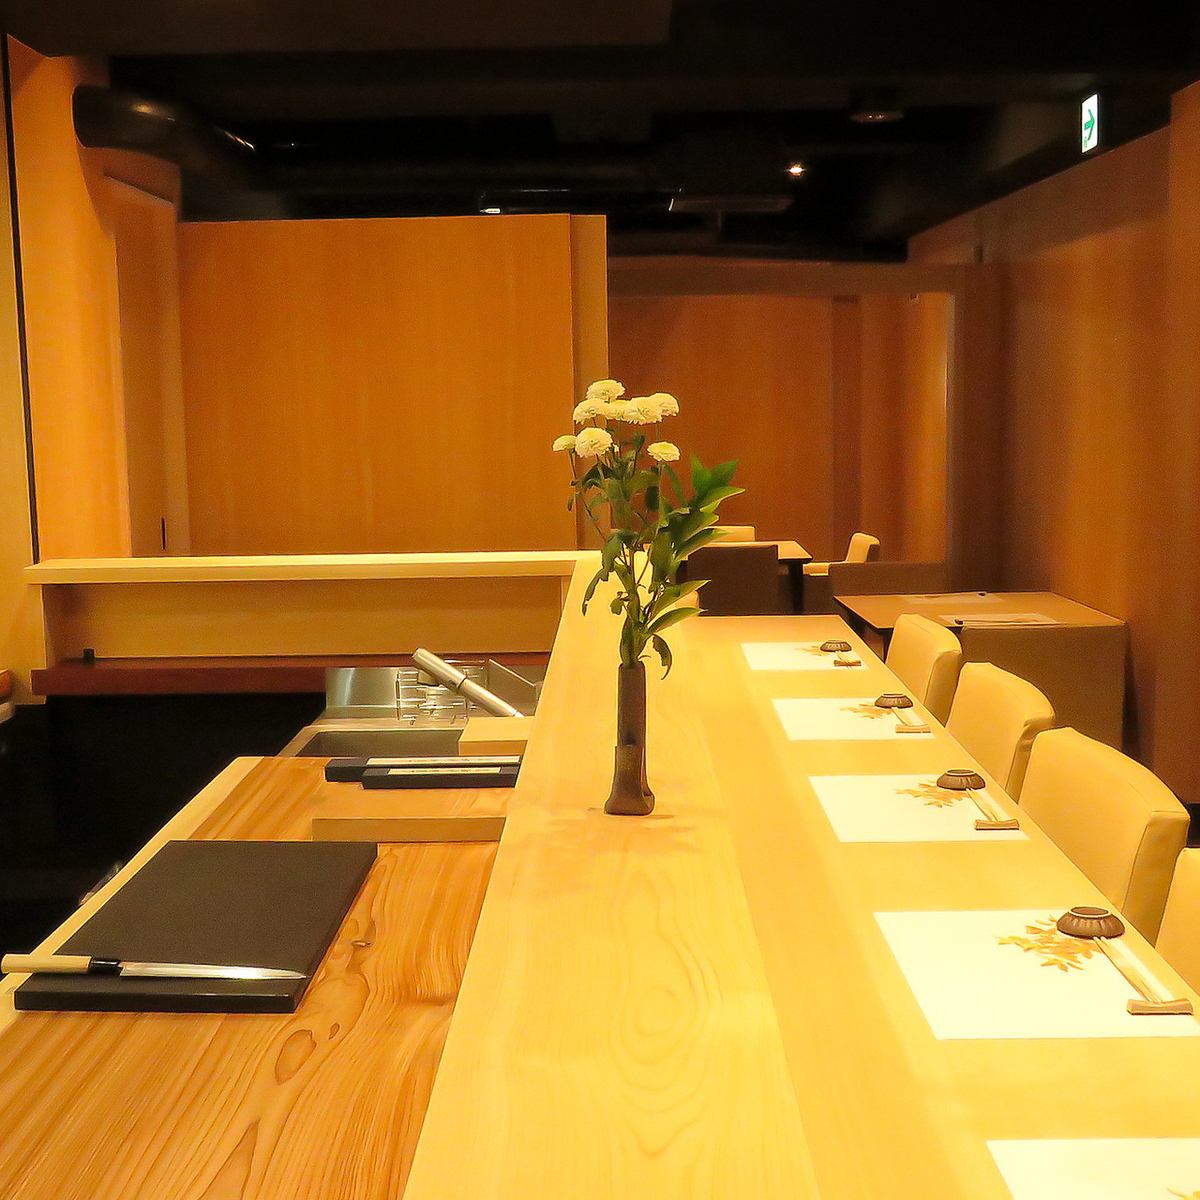 一家可以悠闲地享用正宗日本料理的餐厅，看起来很漂亮!是一家公司宴会和娱乐必去的日本餐厅。